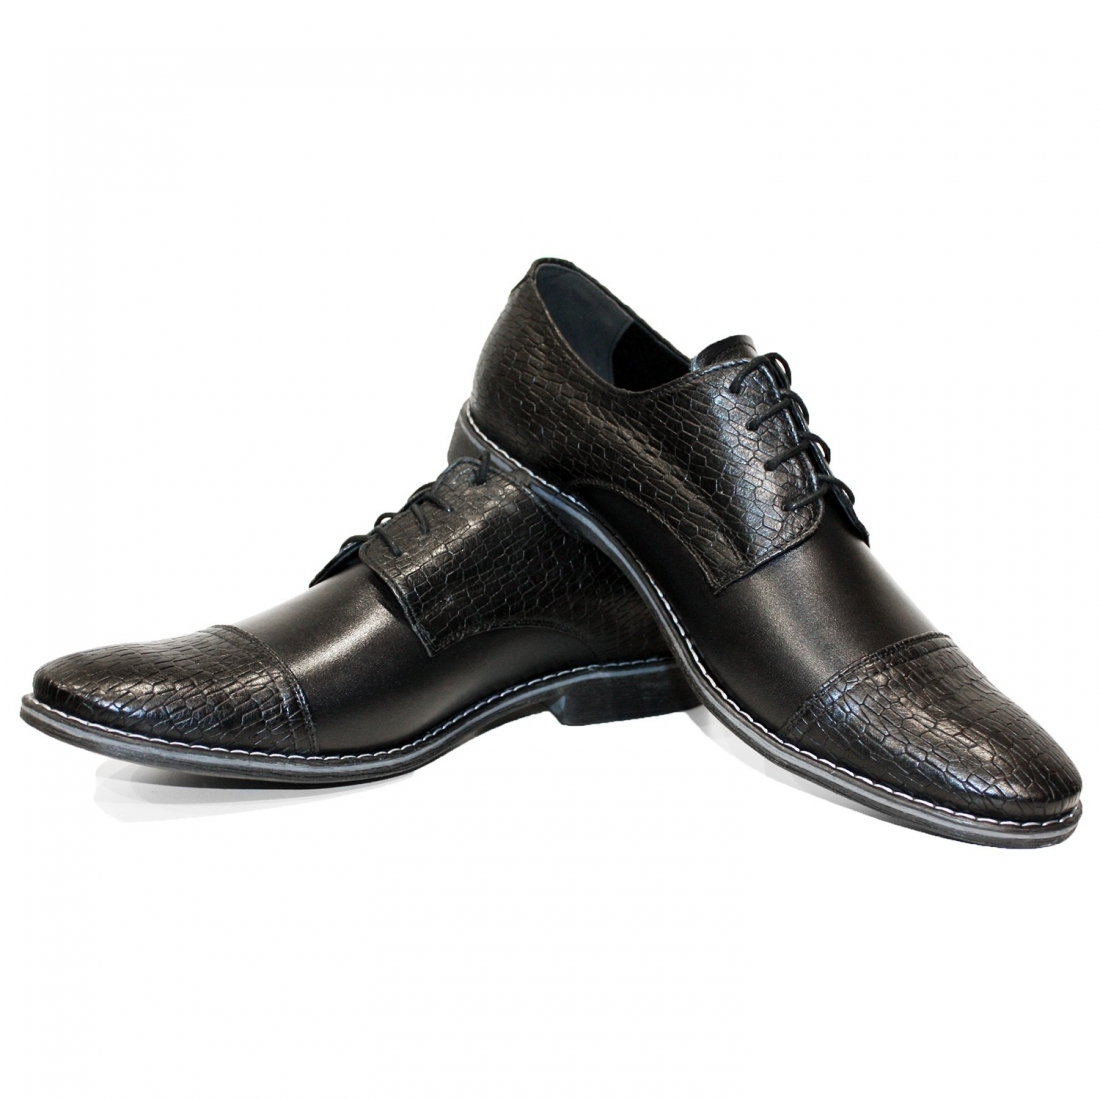 Modello Partyso - Scarpe Classiche - Handmade Colorful Italian Leather Shoes